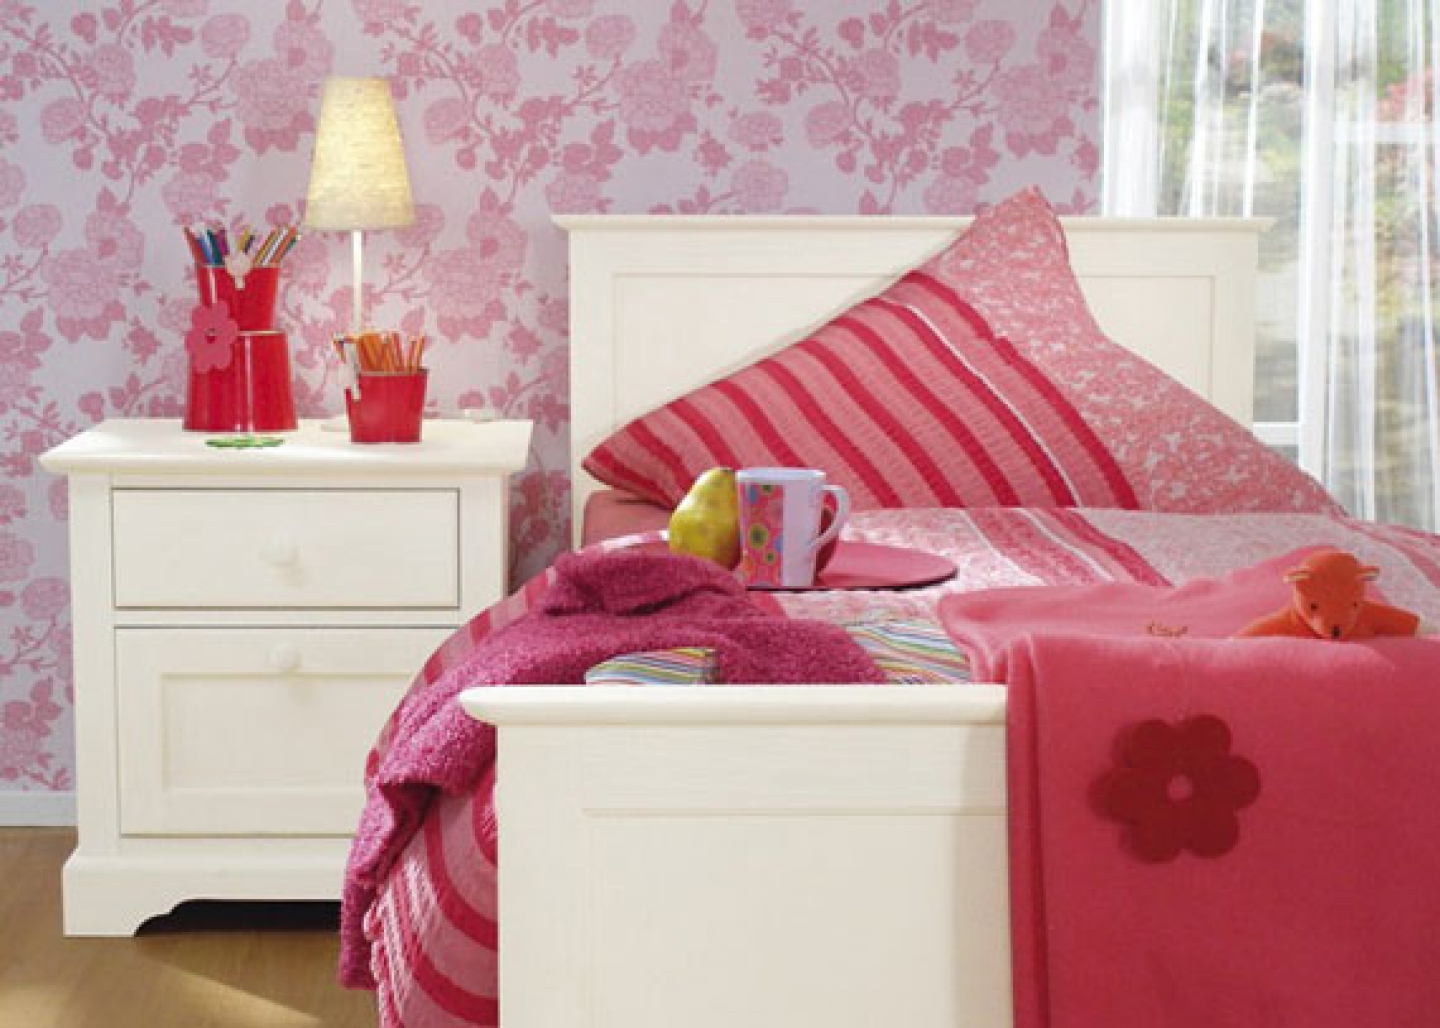 papel pintado rosado de los niños,rosado,dormitorio,mueble,producto,cama